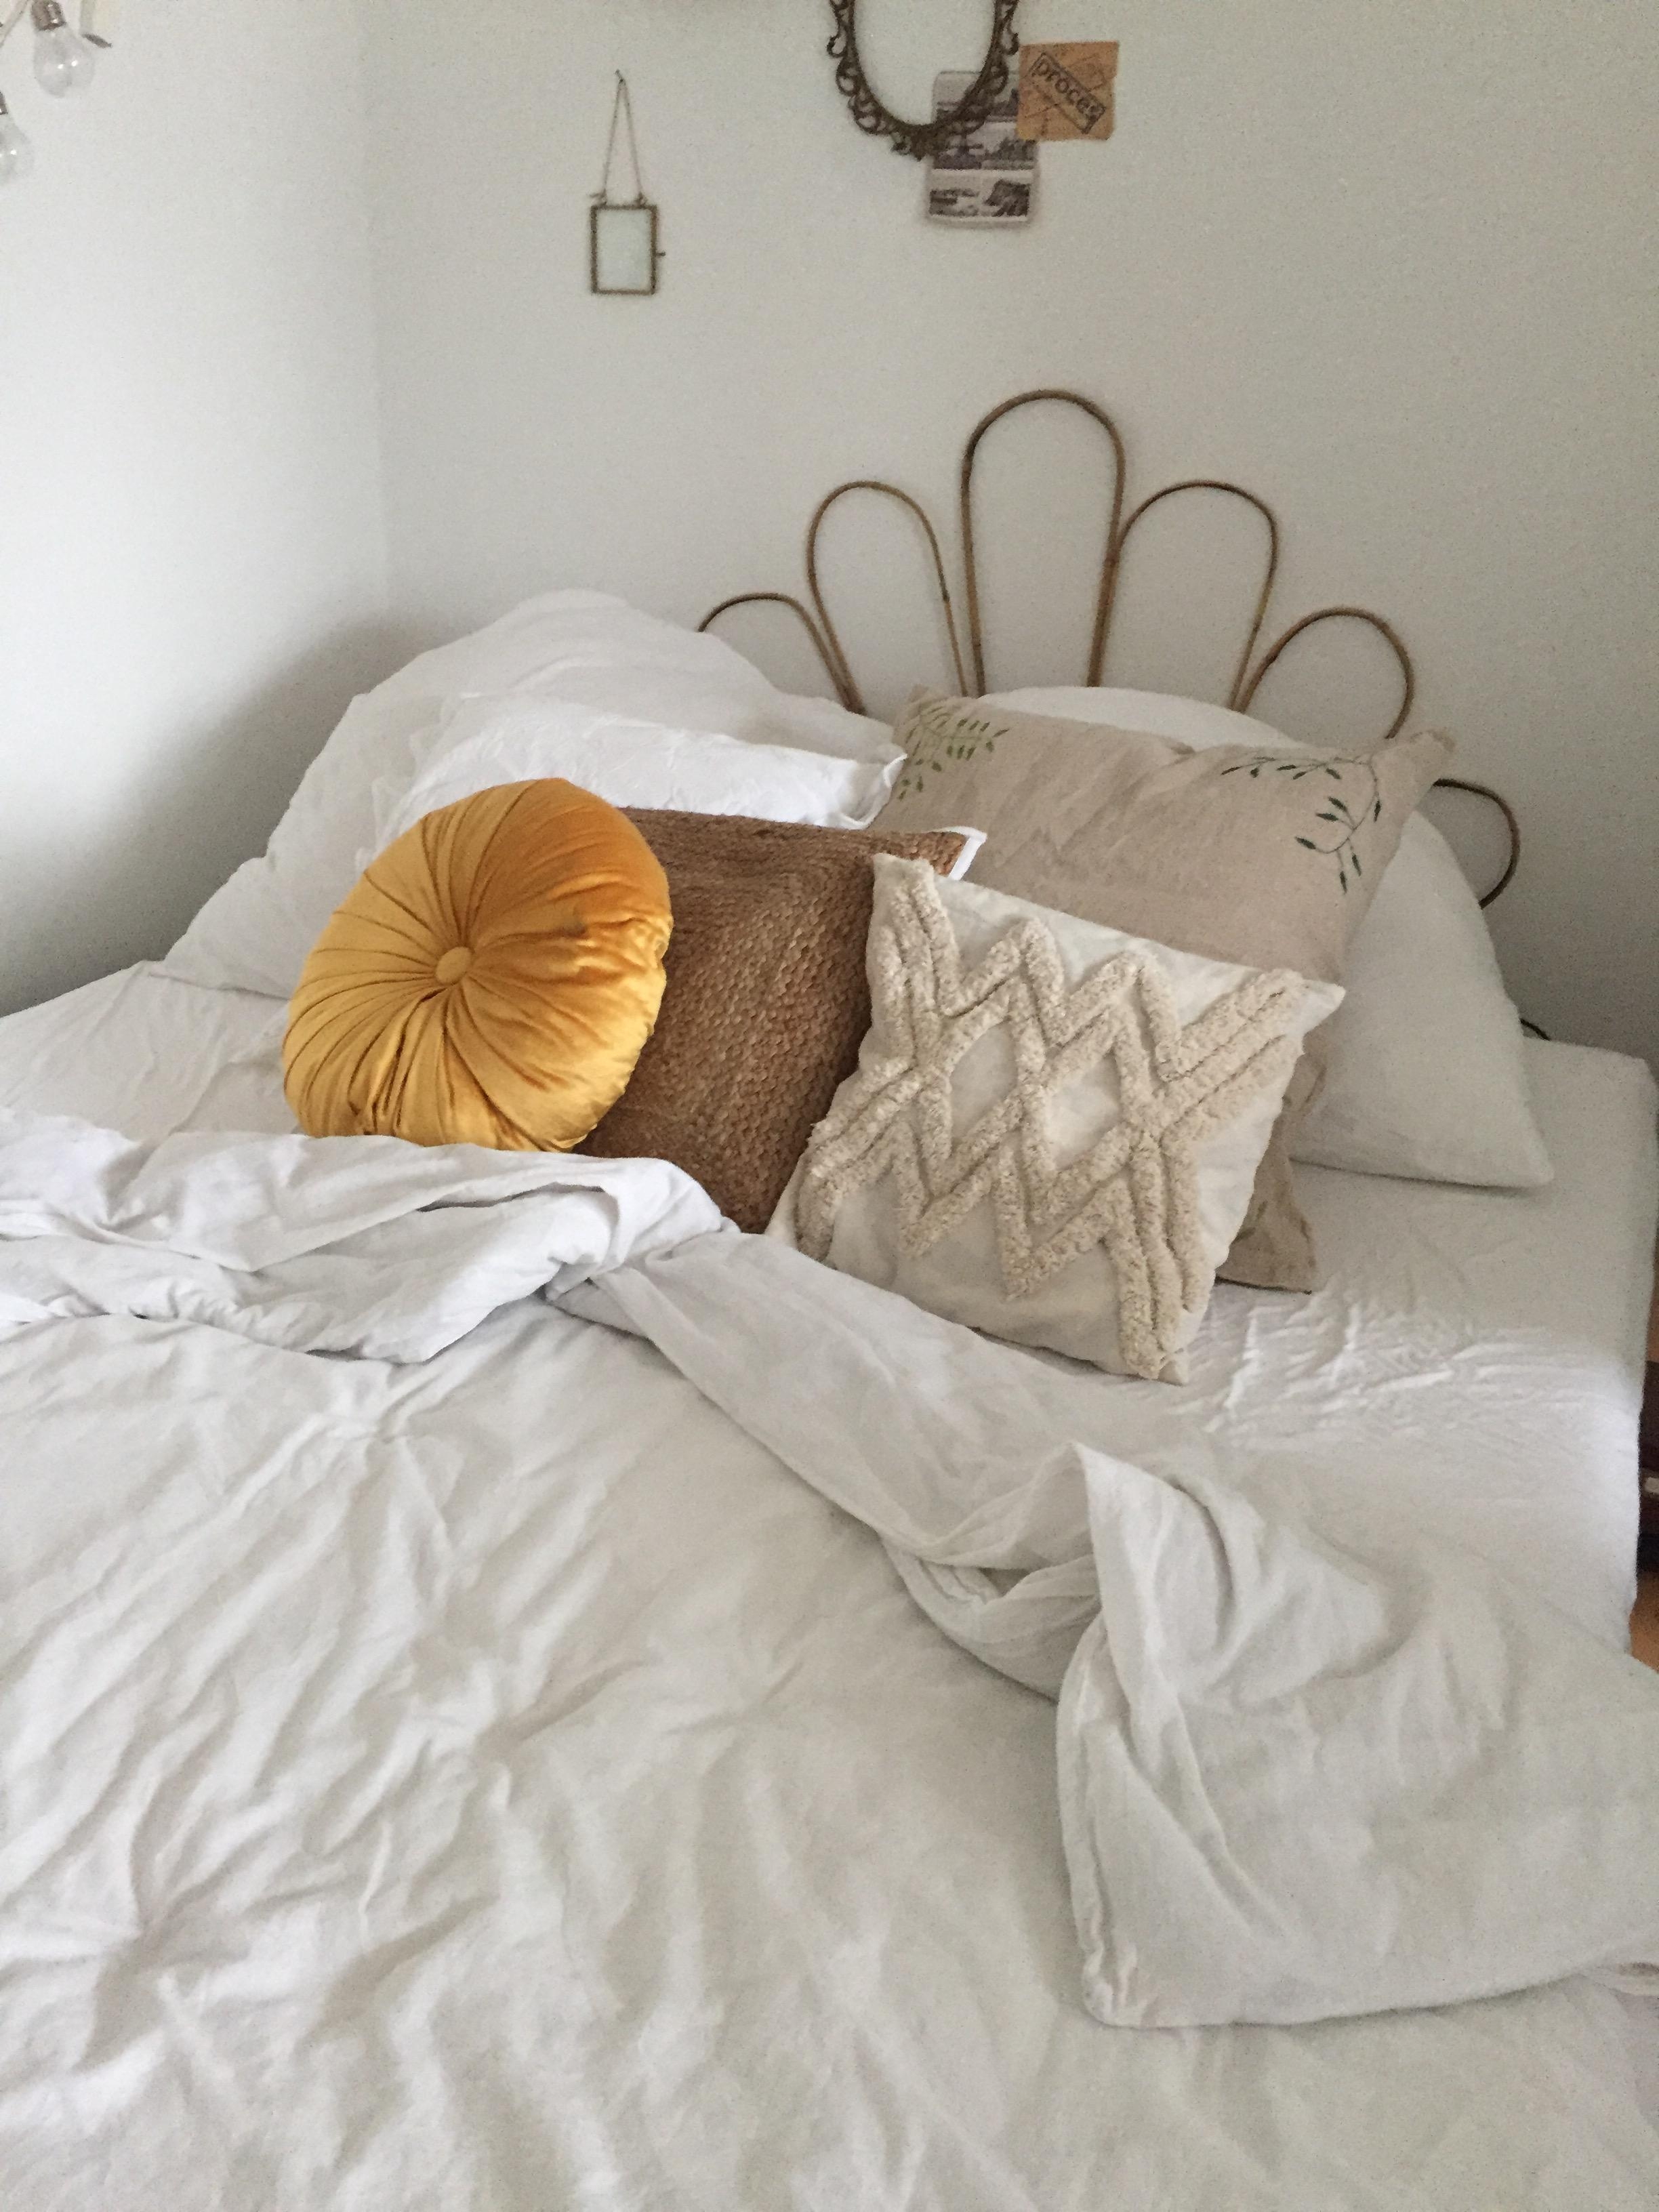 Heute mal im Bett bleiben🧡 #bedroom #interior #vintage #cozy #couchstyle #scandi 